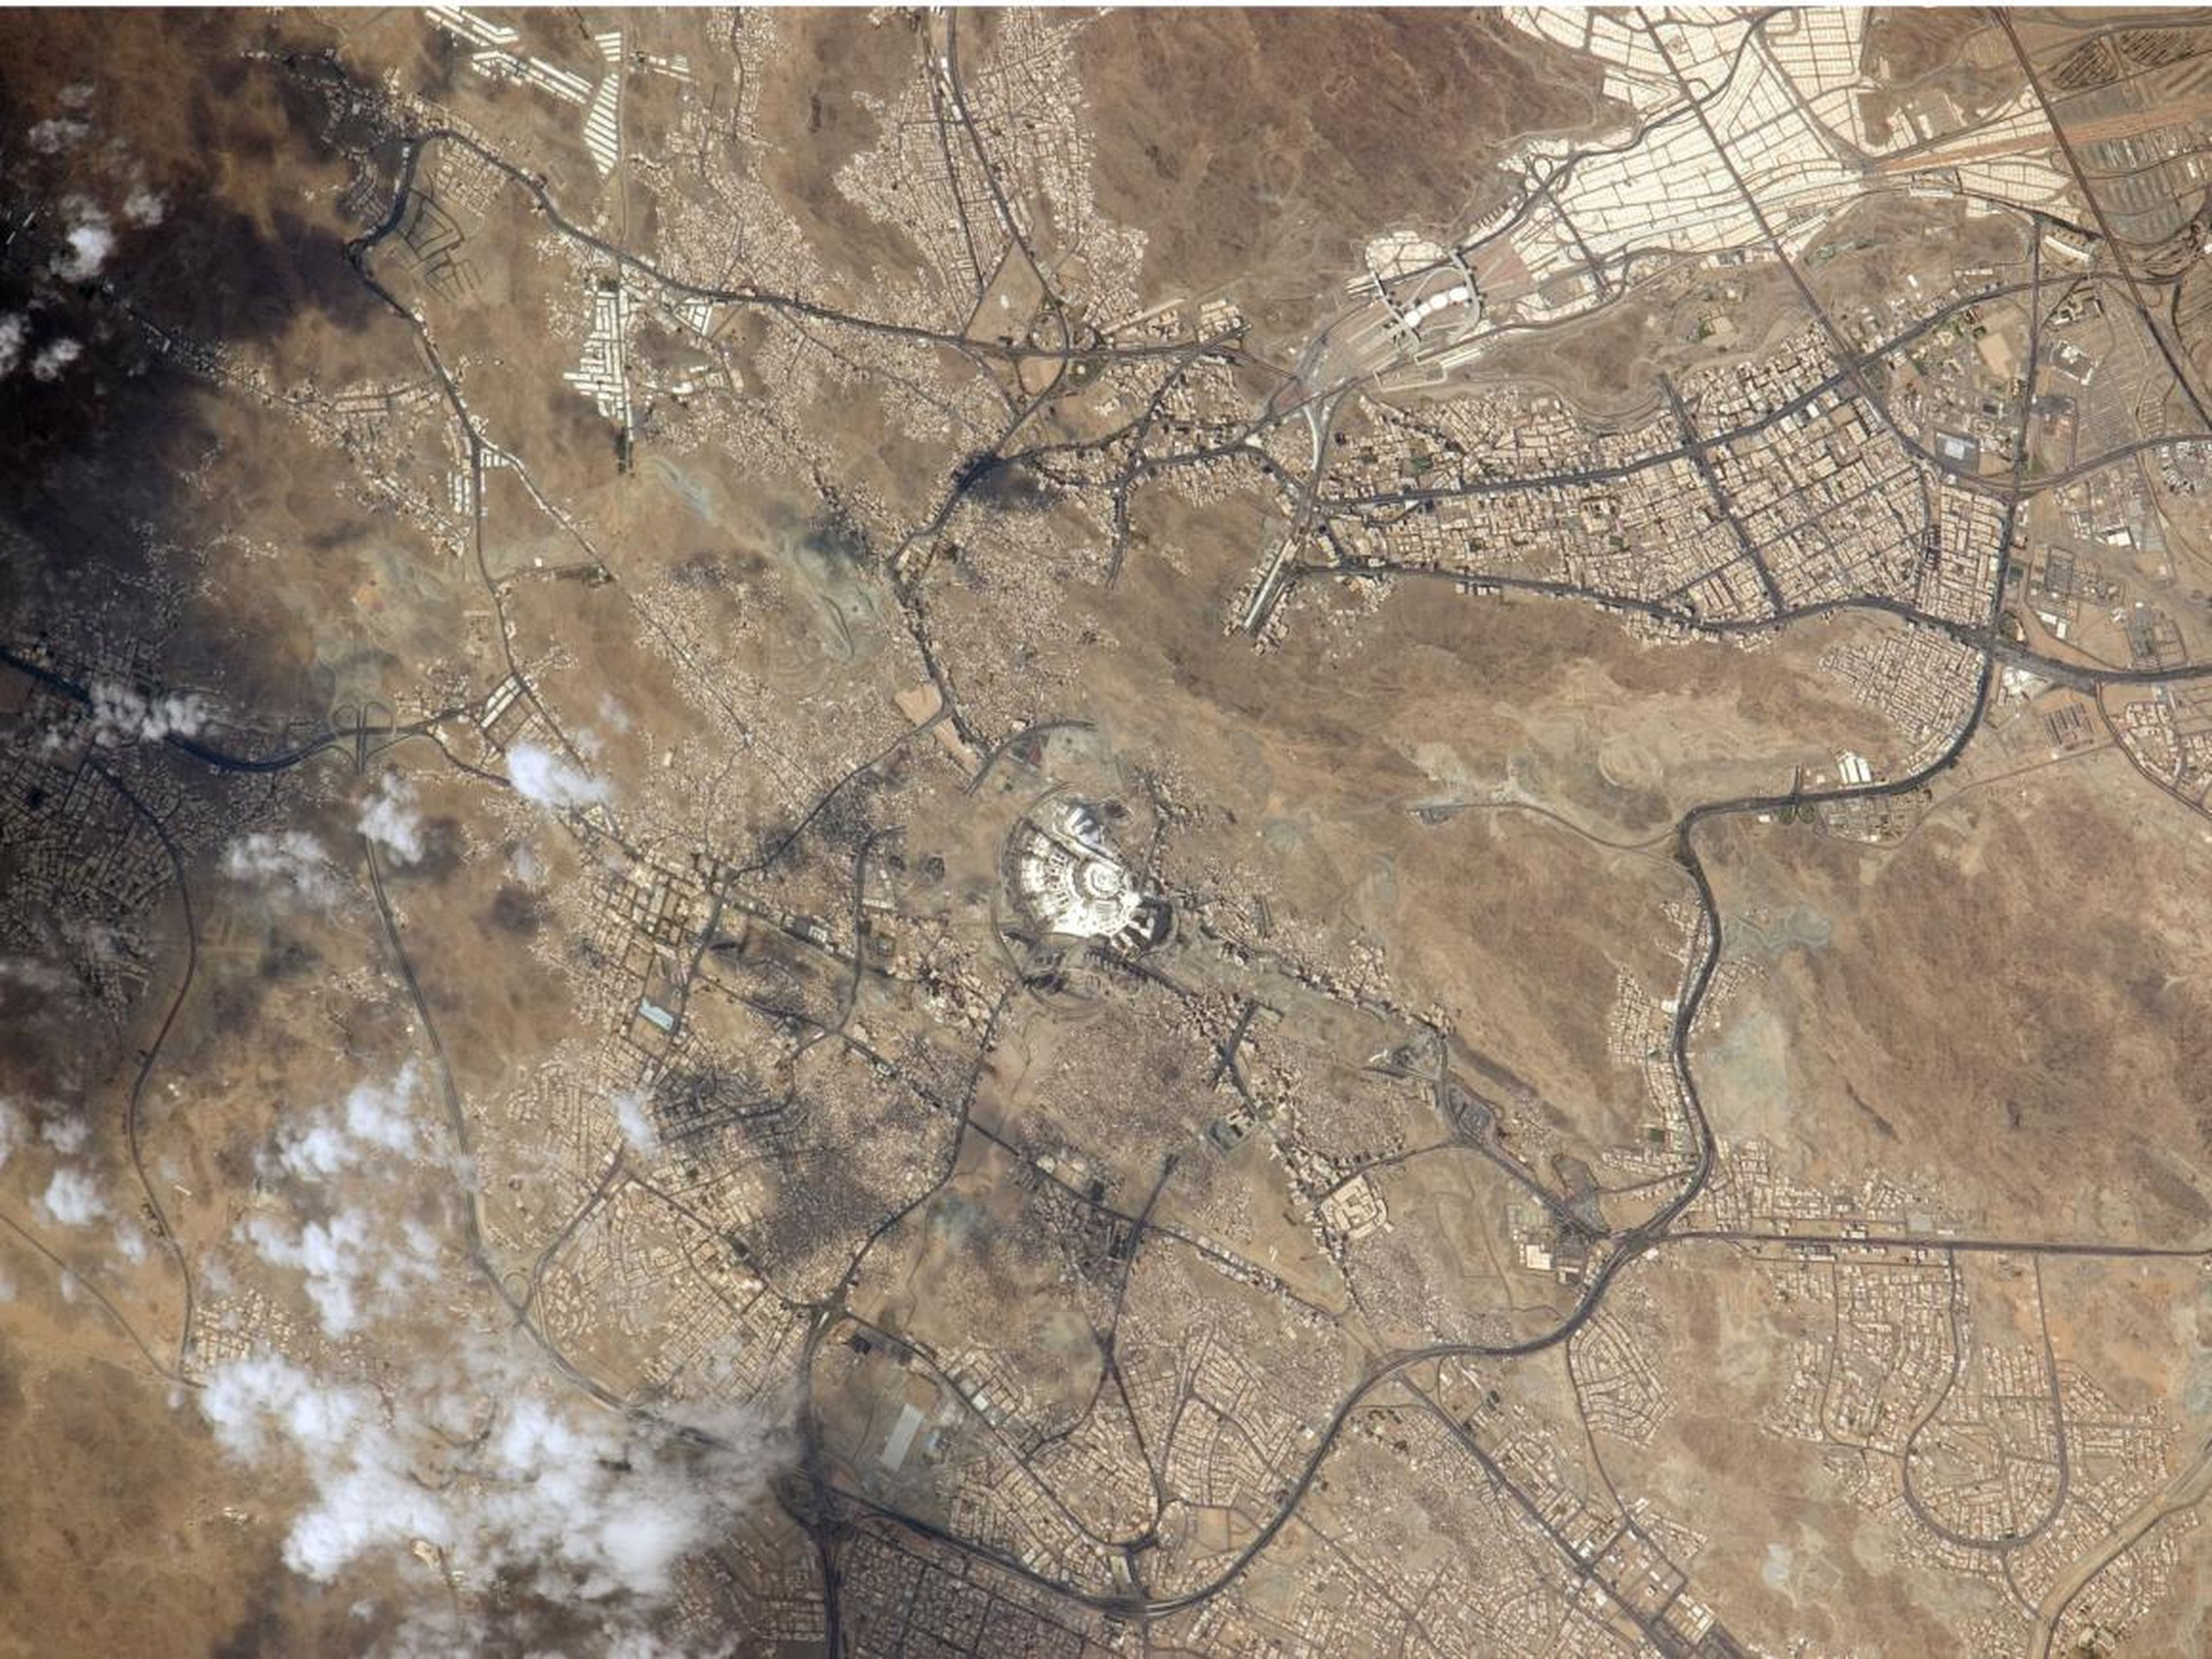 La Meca vista desde una estación espacial internacional.